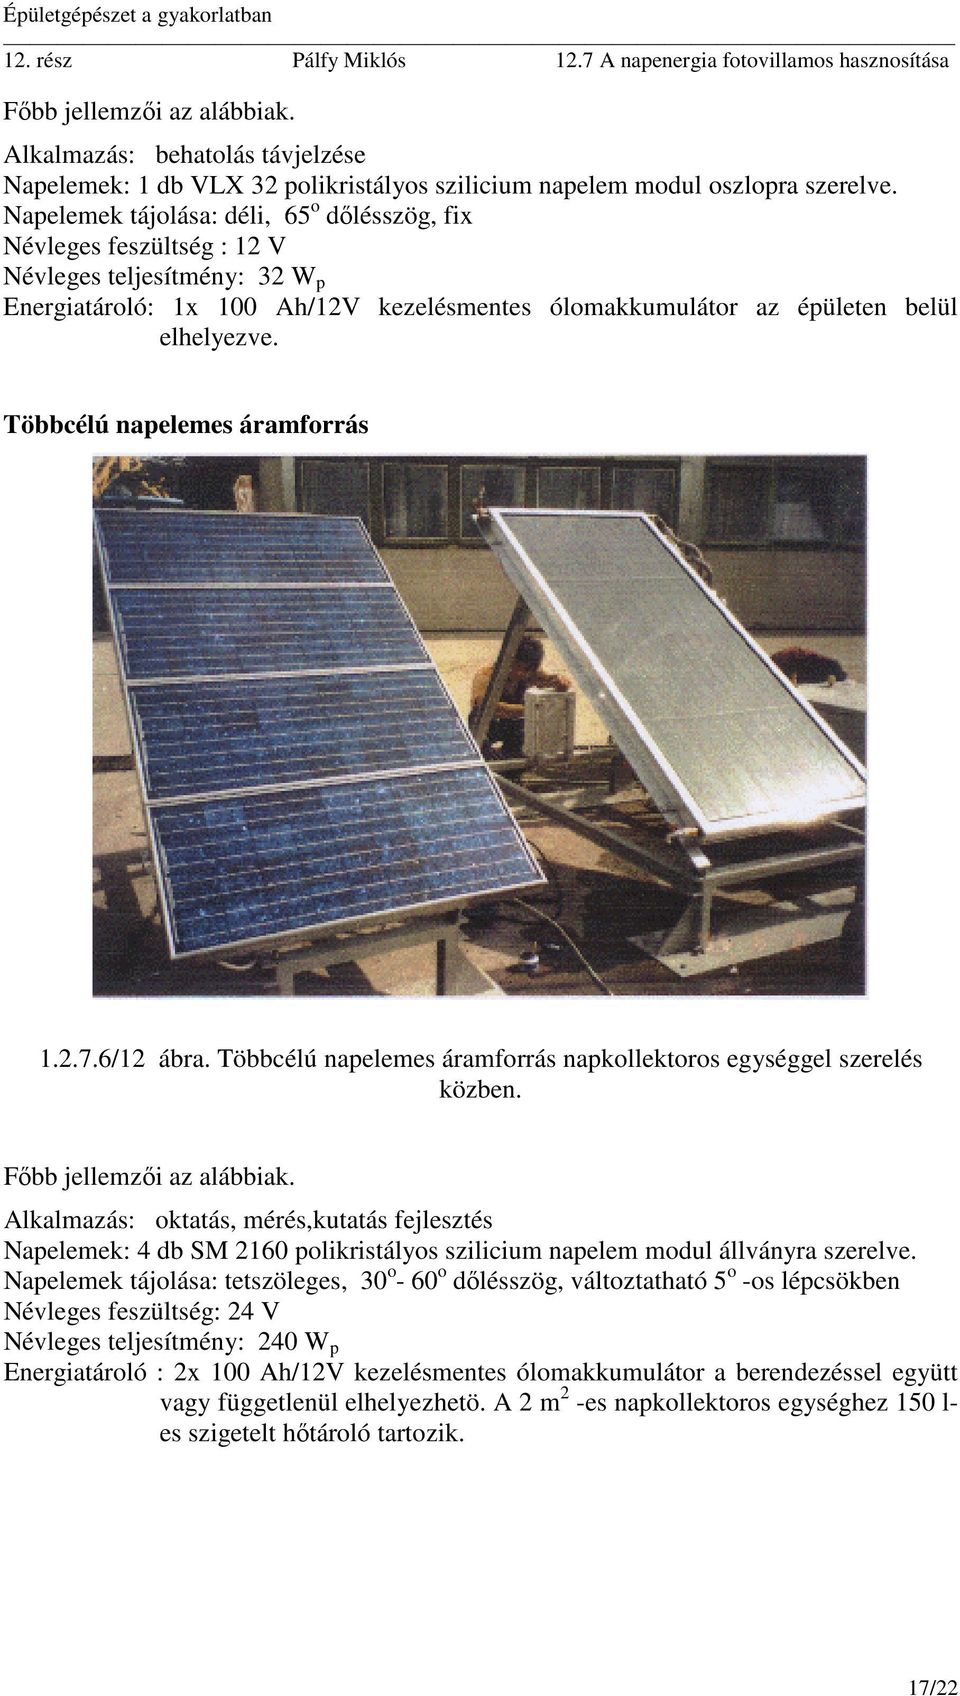 Többcélú napelemes áramforrás 1.2.7.6/12 ábra. Többcélú napelemes áramforrás napkollektoros egységgel szerelés közben.